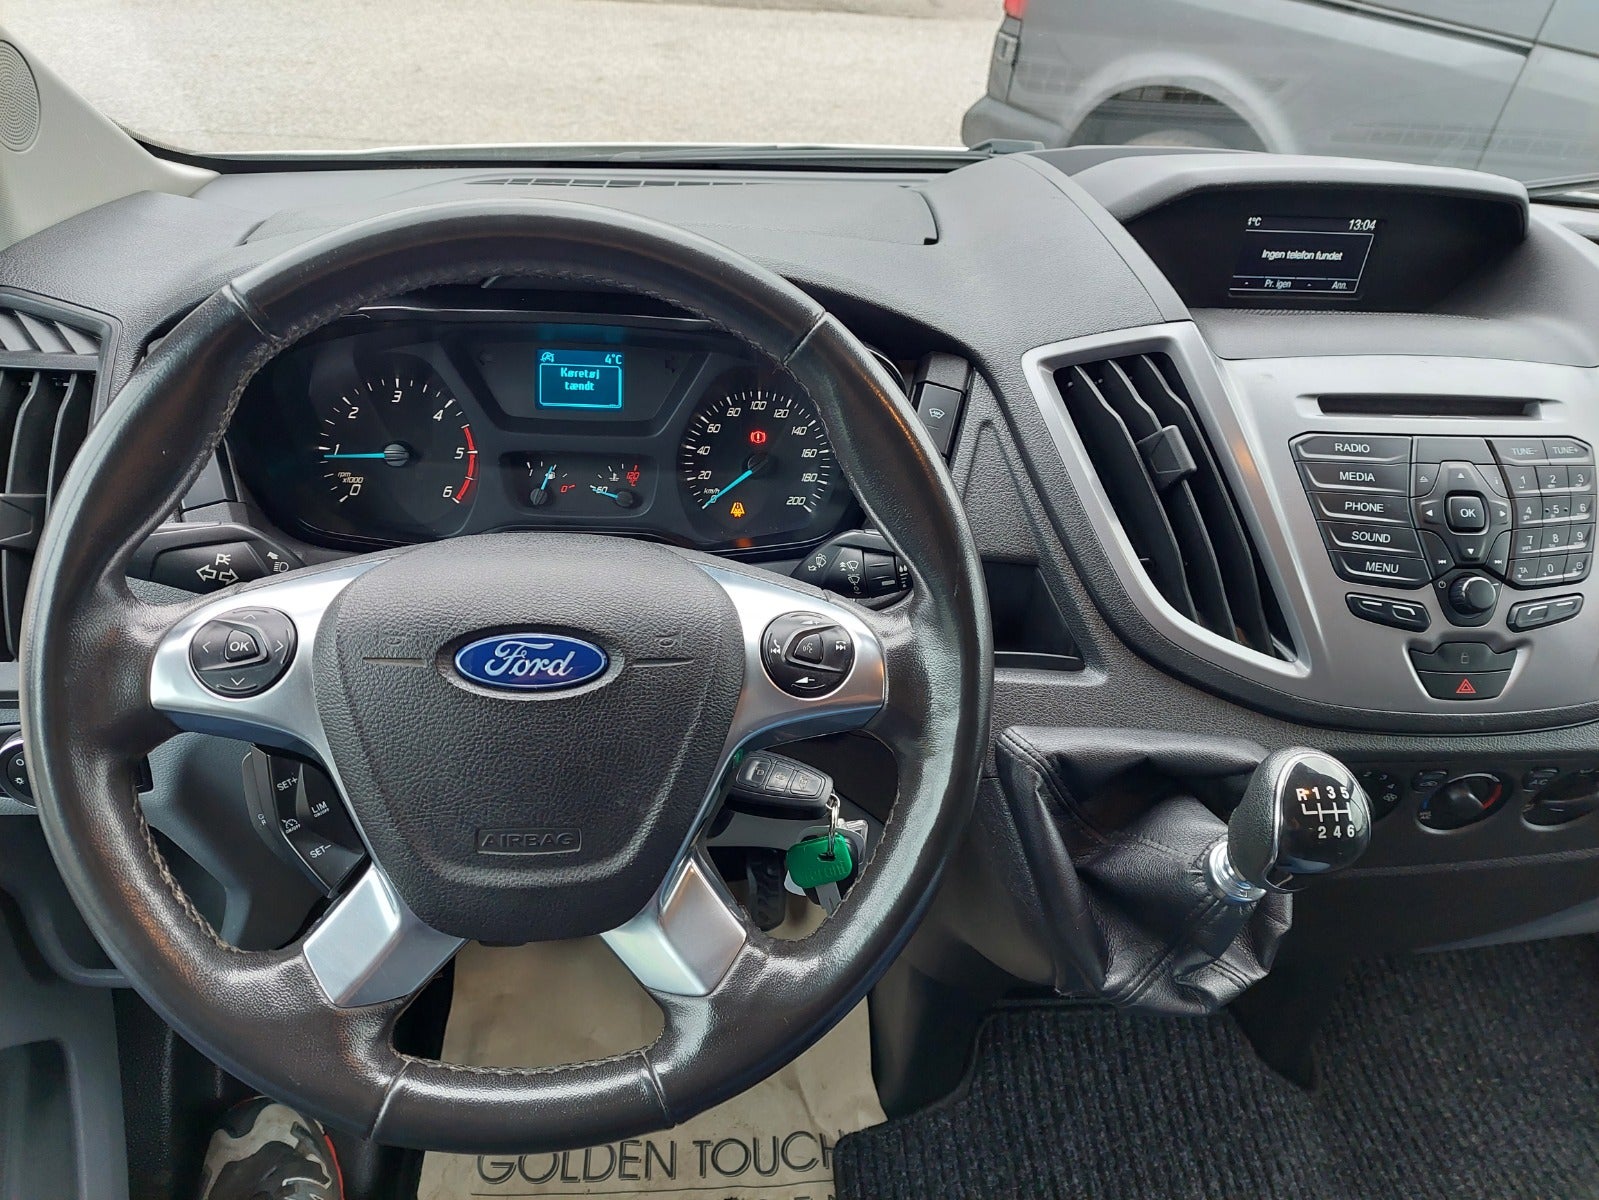 Ford Transit 350 L2 Van 2018